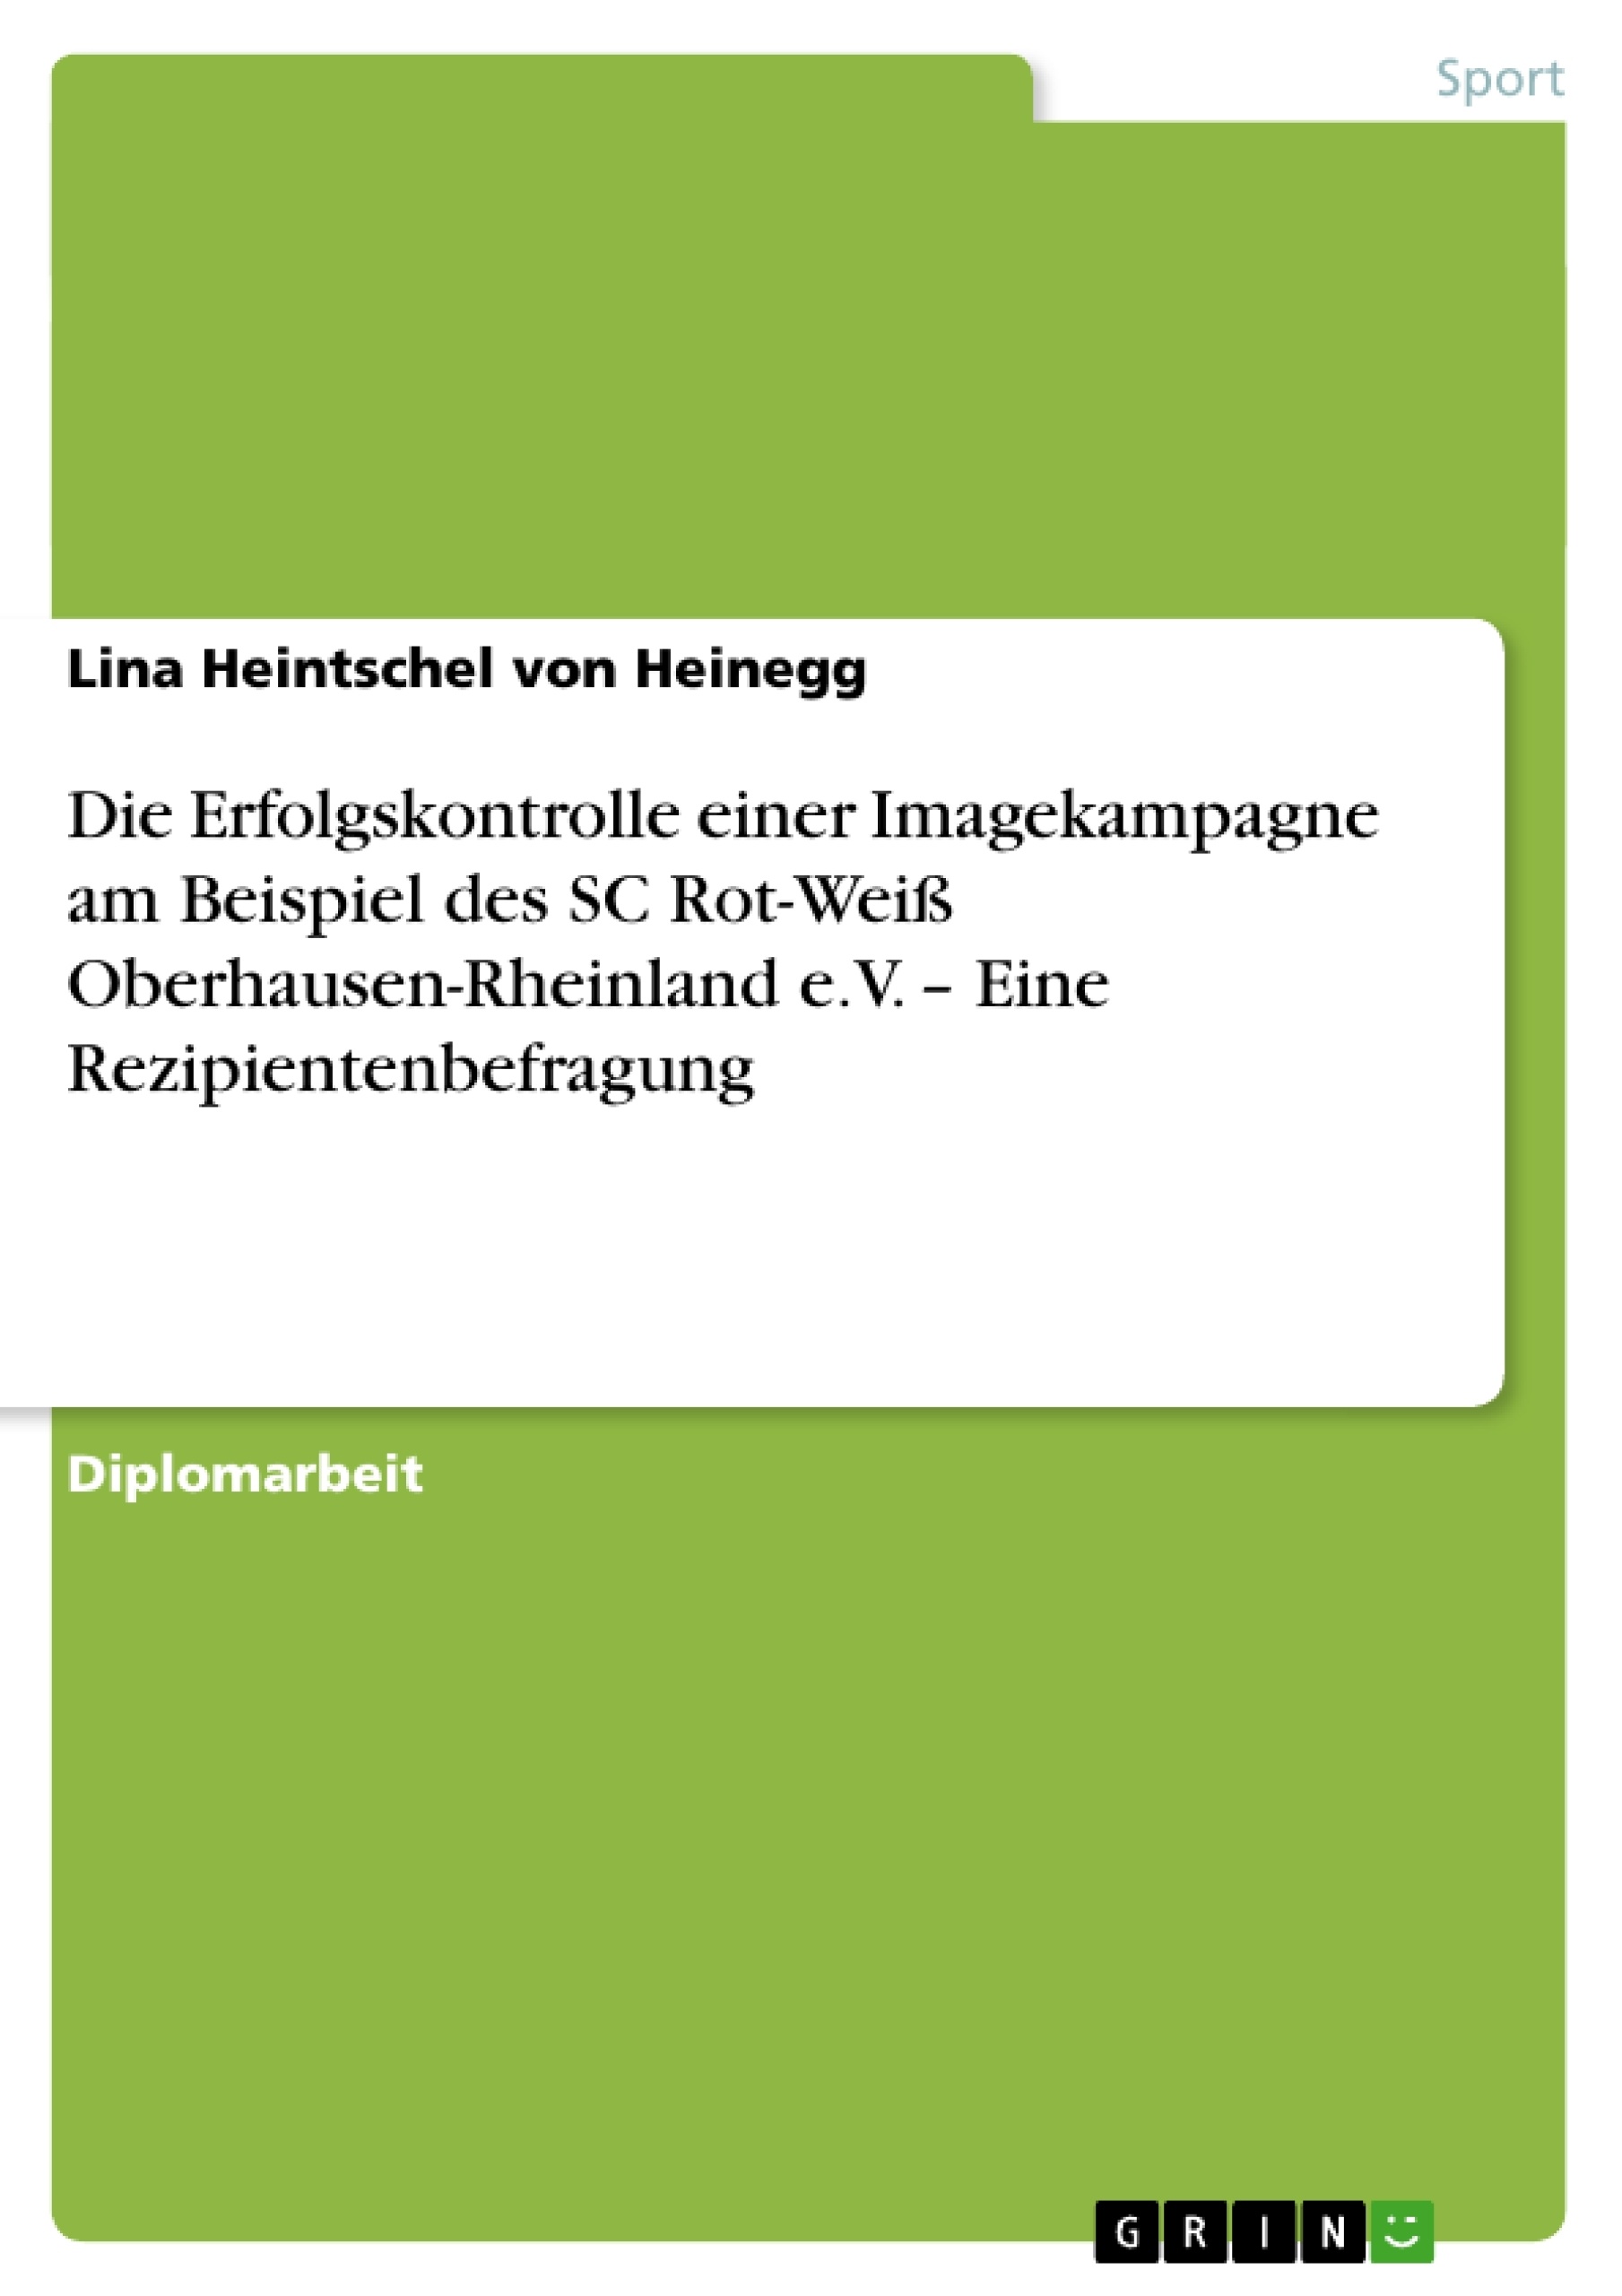 Título: Die Erfolgskontrolle einer Imagekampagne am Beispiel des SC Rot-Weiß Oberhausen-Rheinland e.V. – Eine Rezipientenbefragung